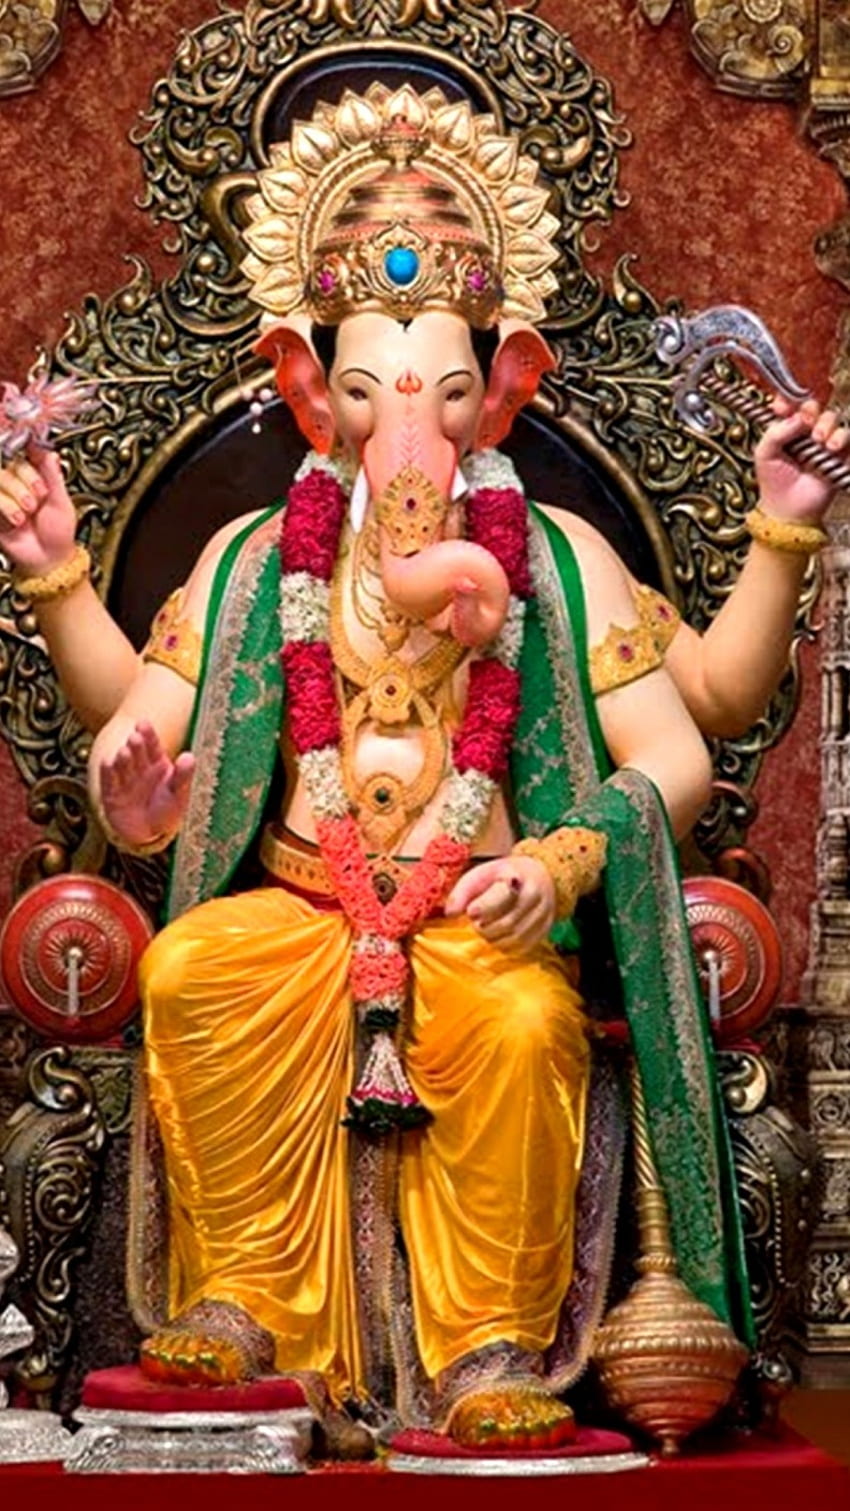 Shree Ganesh | Hindu gods, Lord ganesha, Shree ganesh